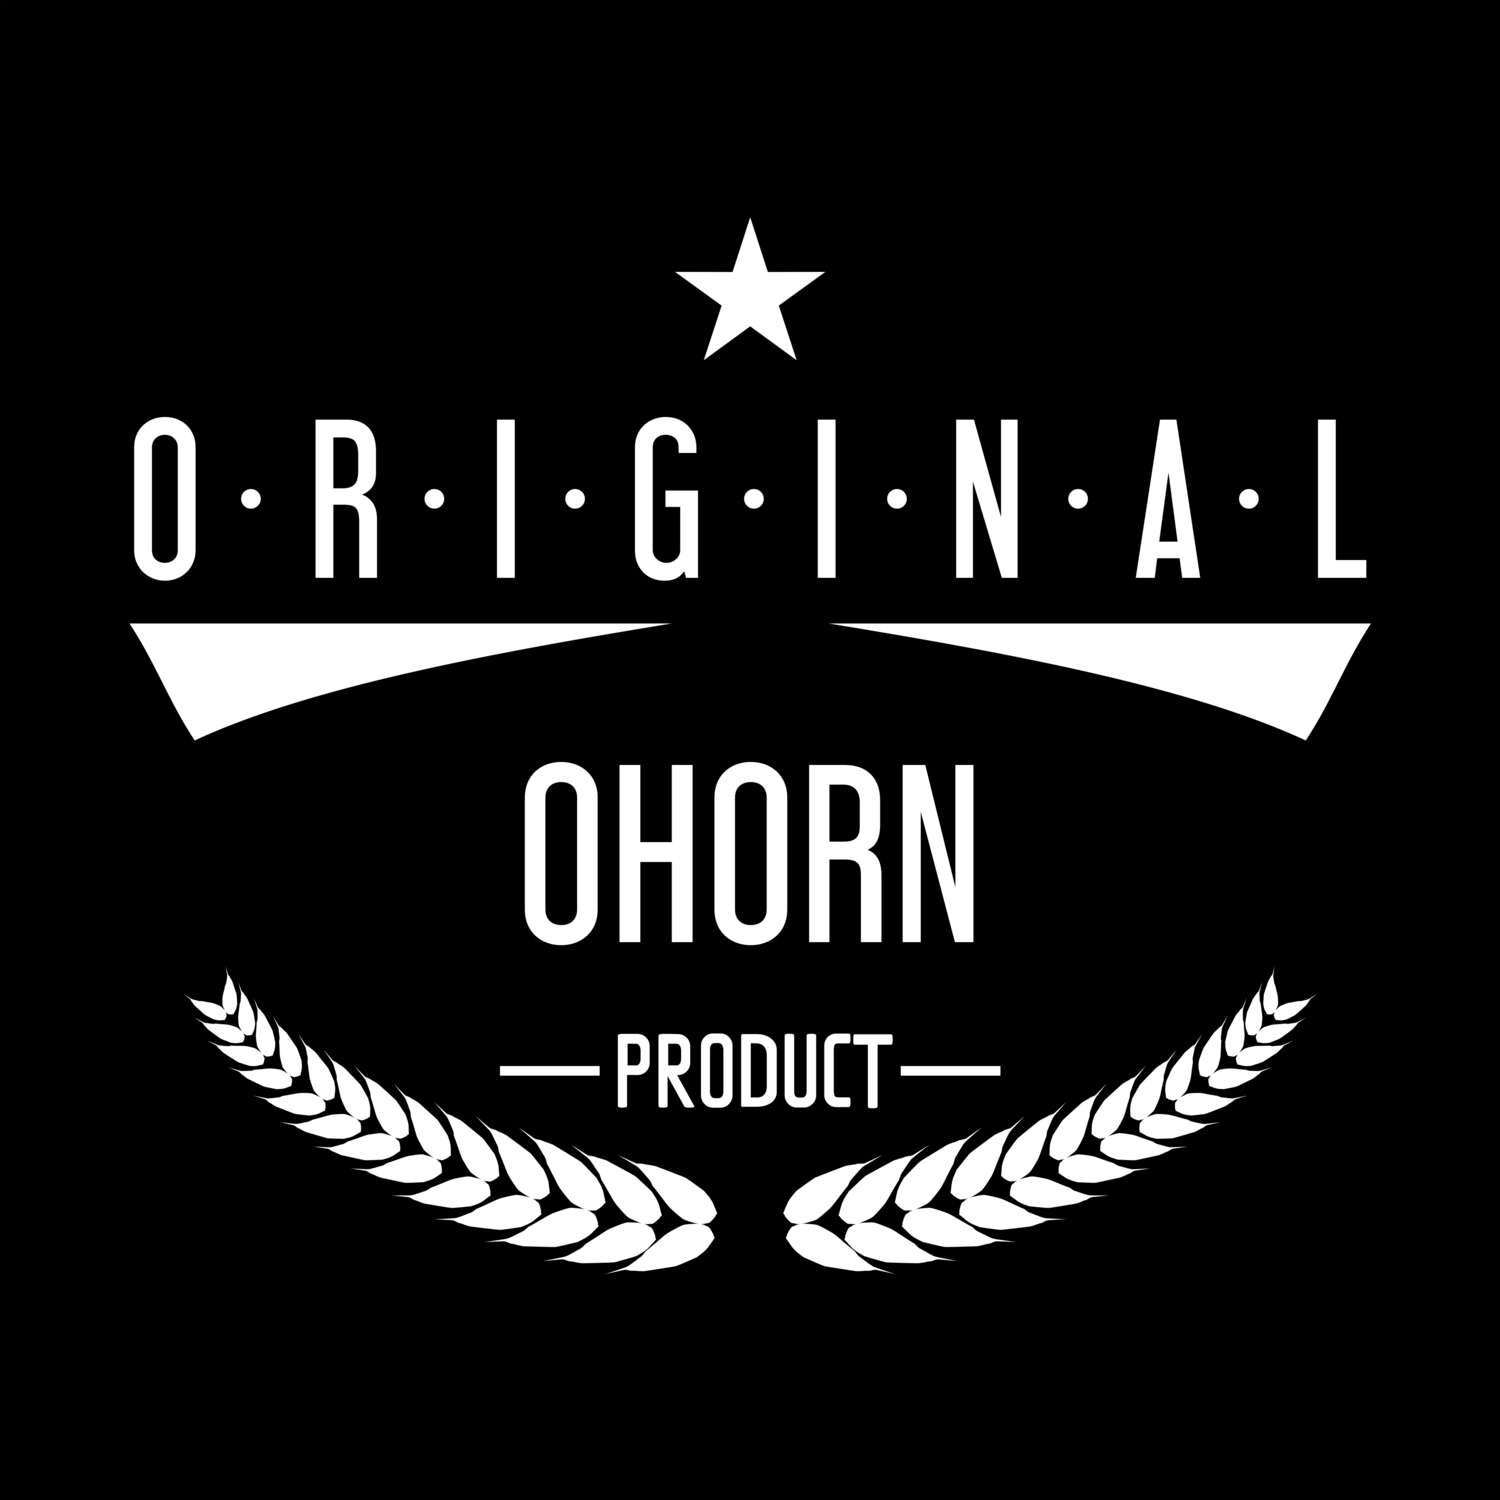 Ohorn T-Shirt »Original Product«